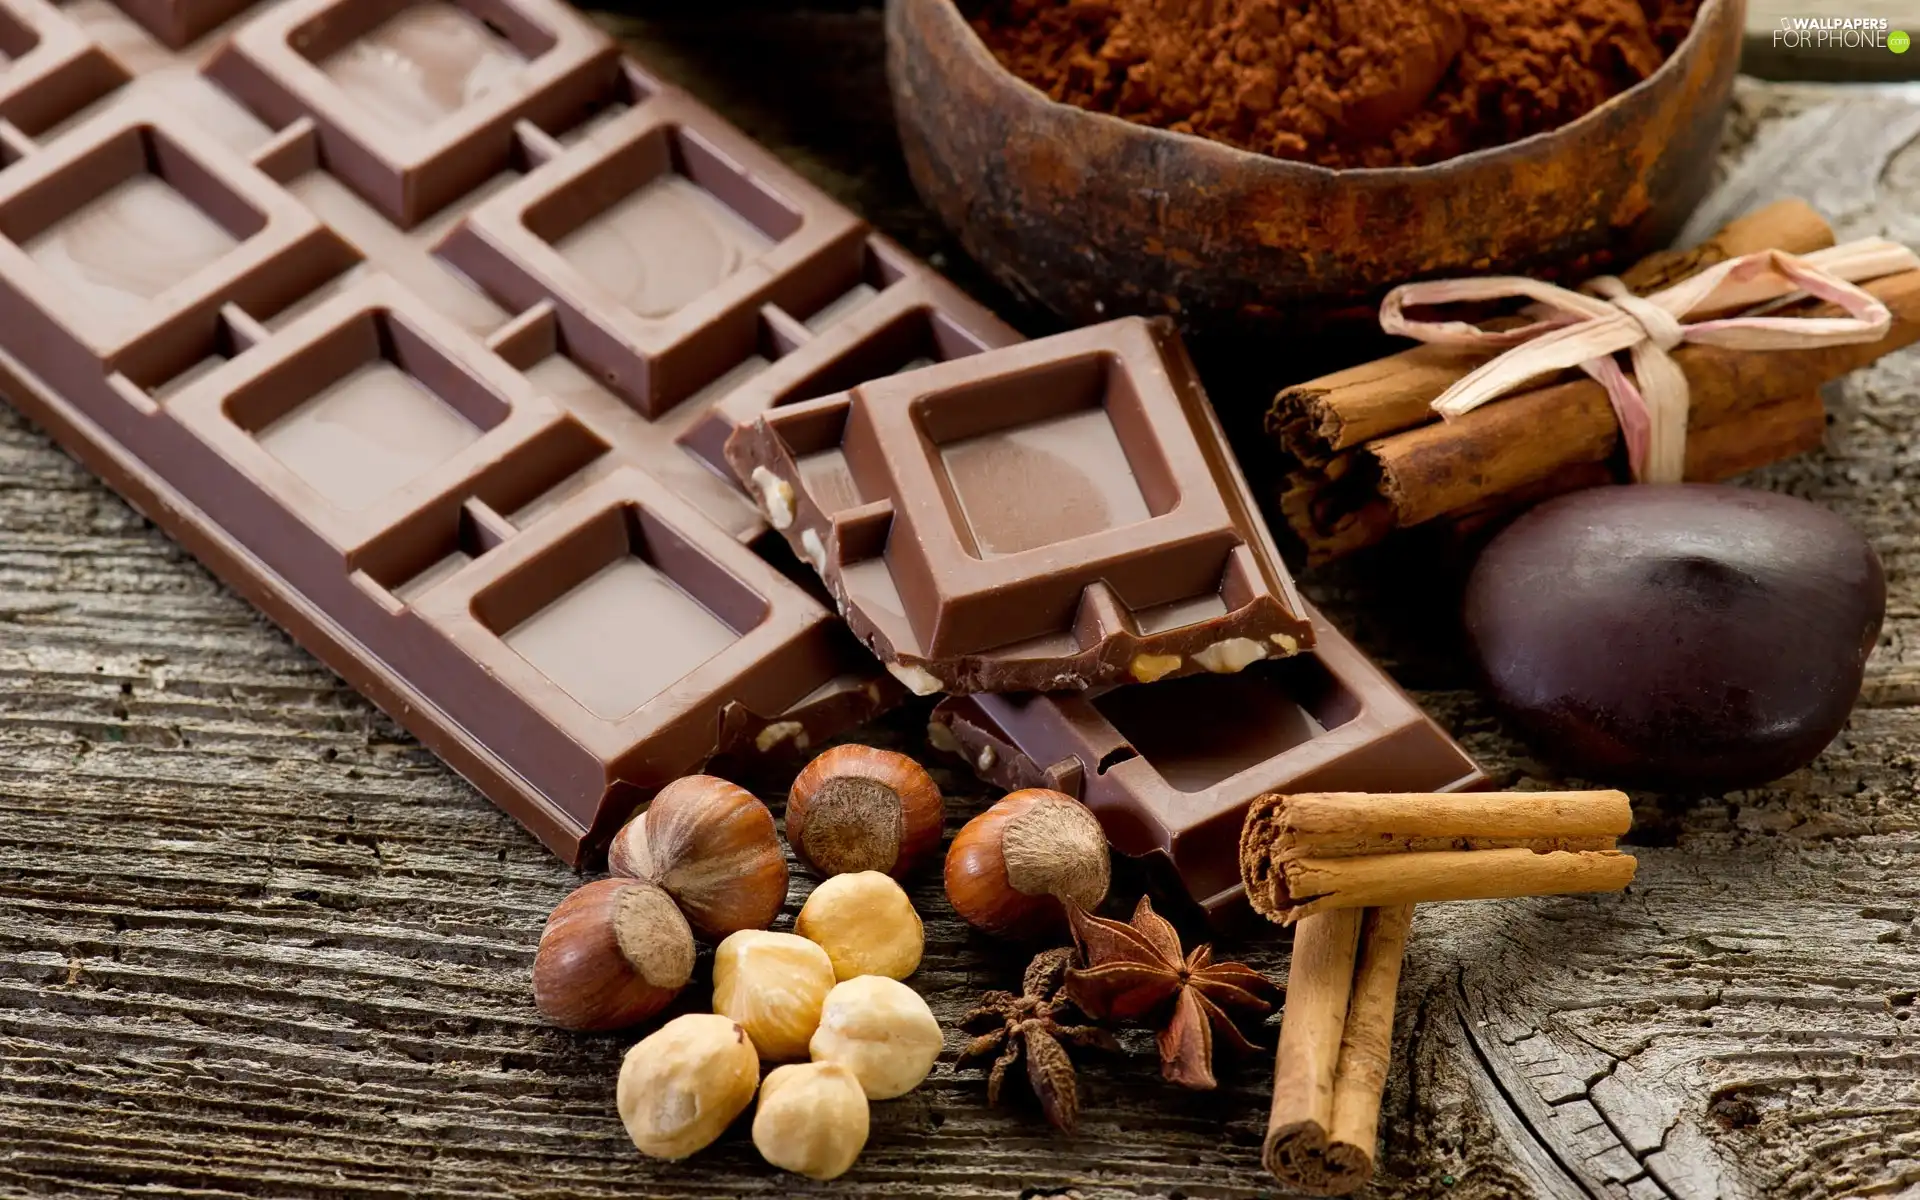 chocolate, cocoa, cinnamon, nuts